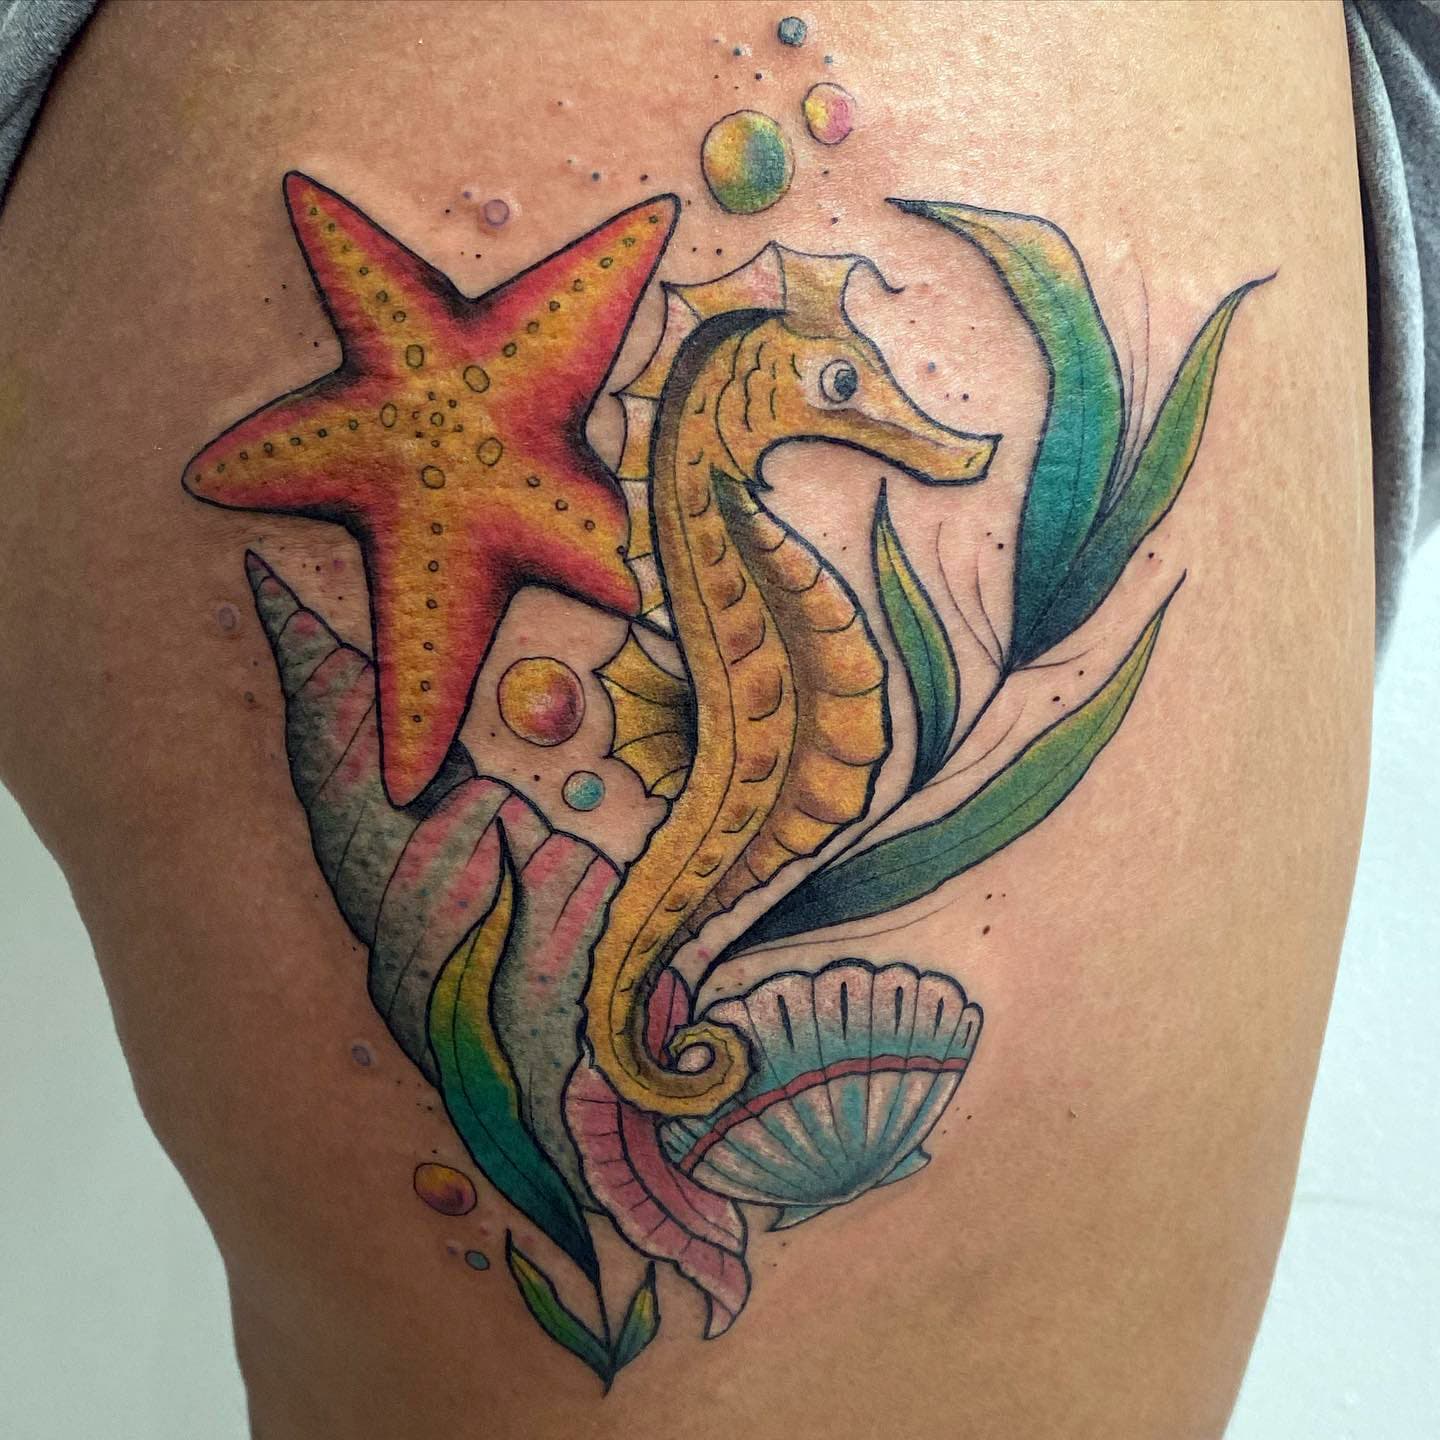 Diseño del tatuaje del caballito de mar Tinta de colores